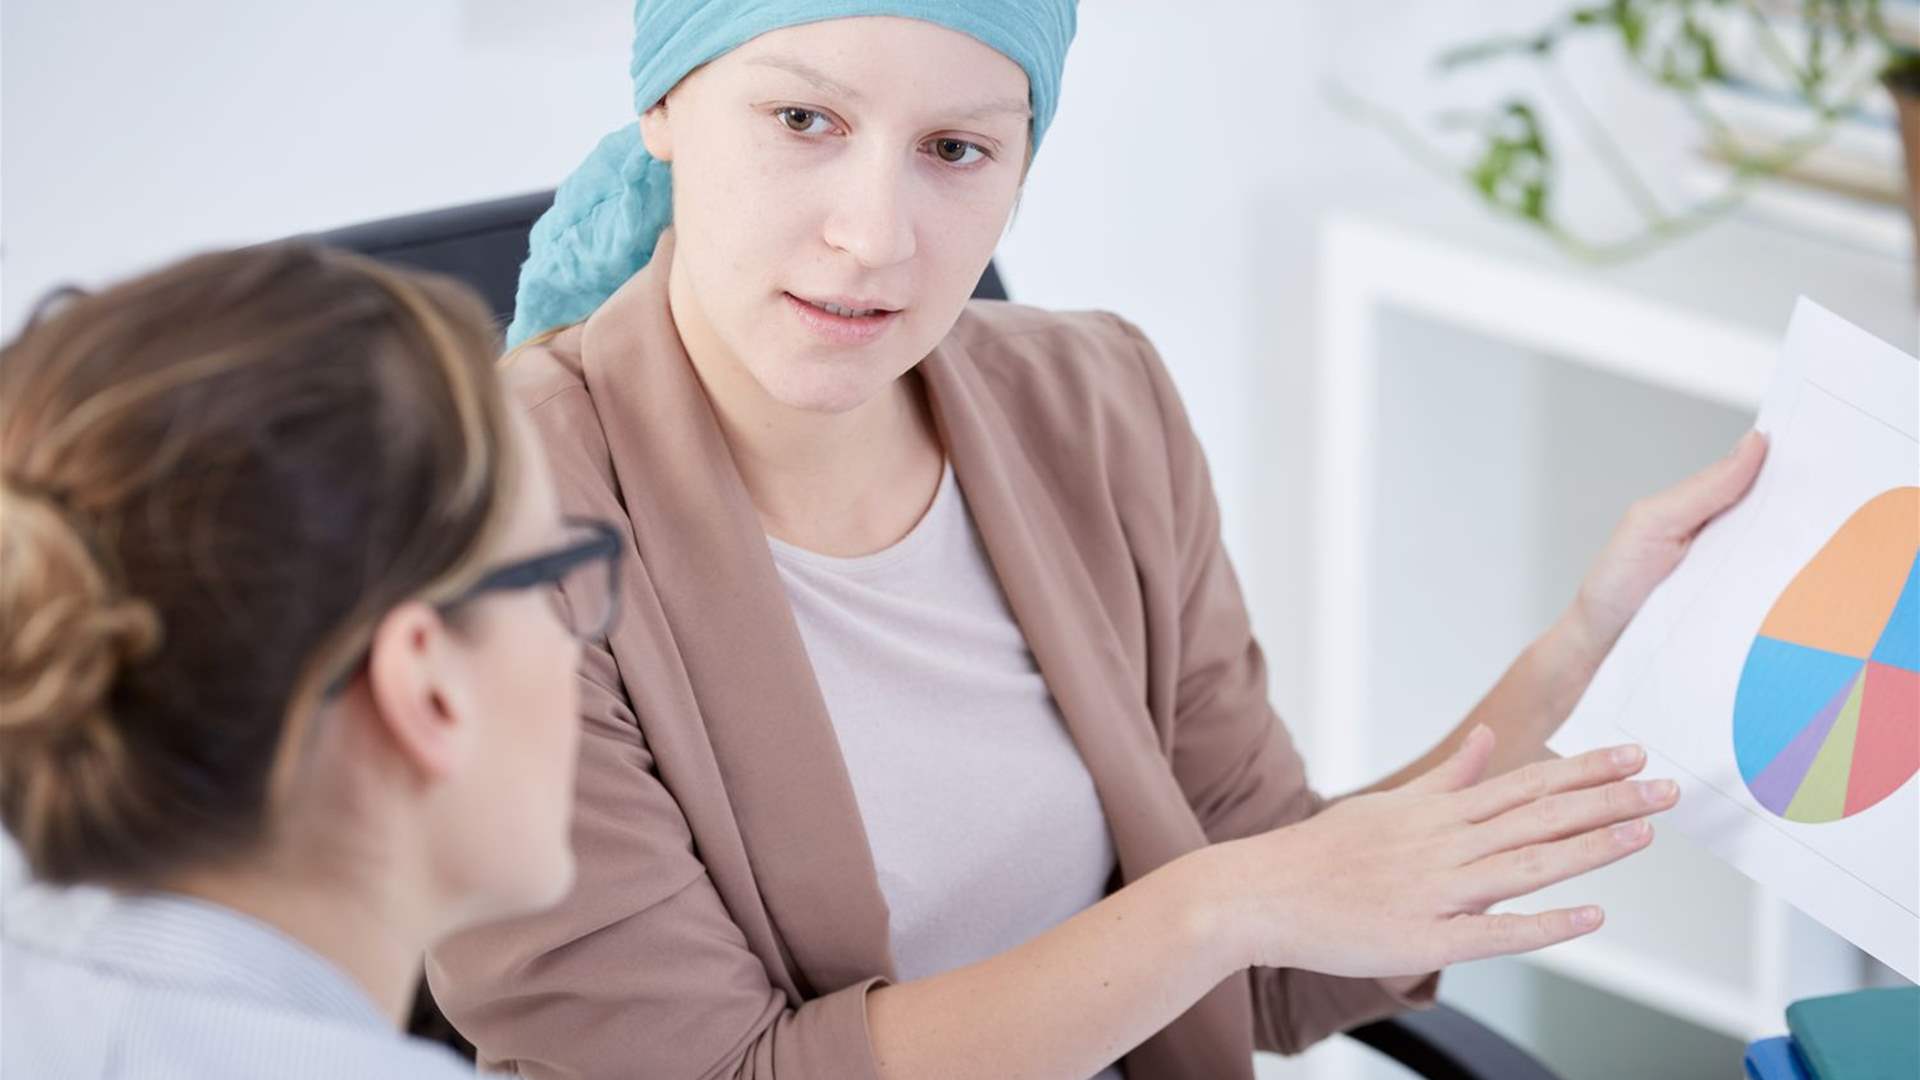 كيف يجب التعامل مع الموظفات المصابات بسرطان الثدي في العمل؟ 